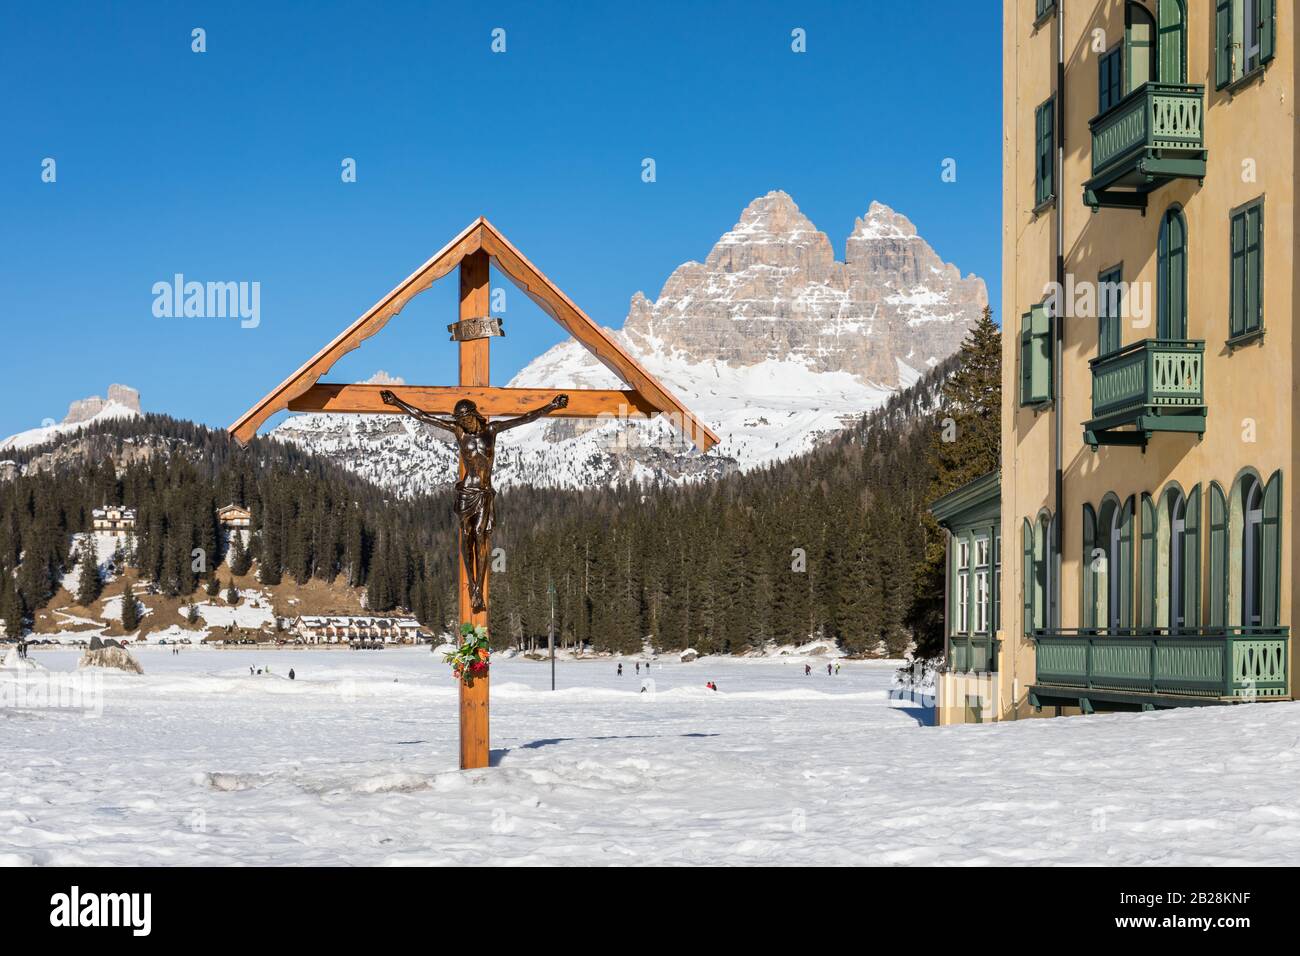 Croce crocifisso in legno con il Lago della Misurina ghiacciato e le tre Cime di Lavaredo sullo sfondo - Misurina, Dolomiti, Veneto, Italia Foto Stock